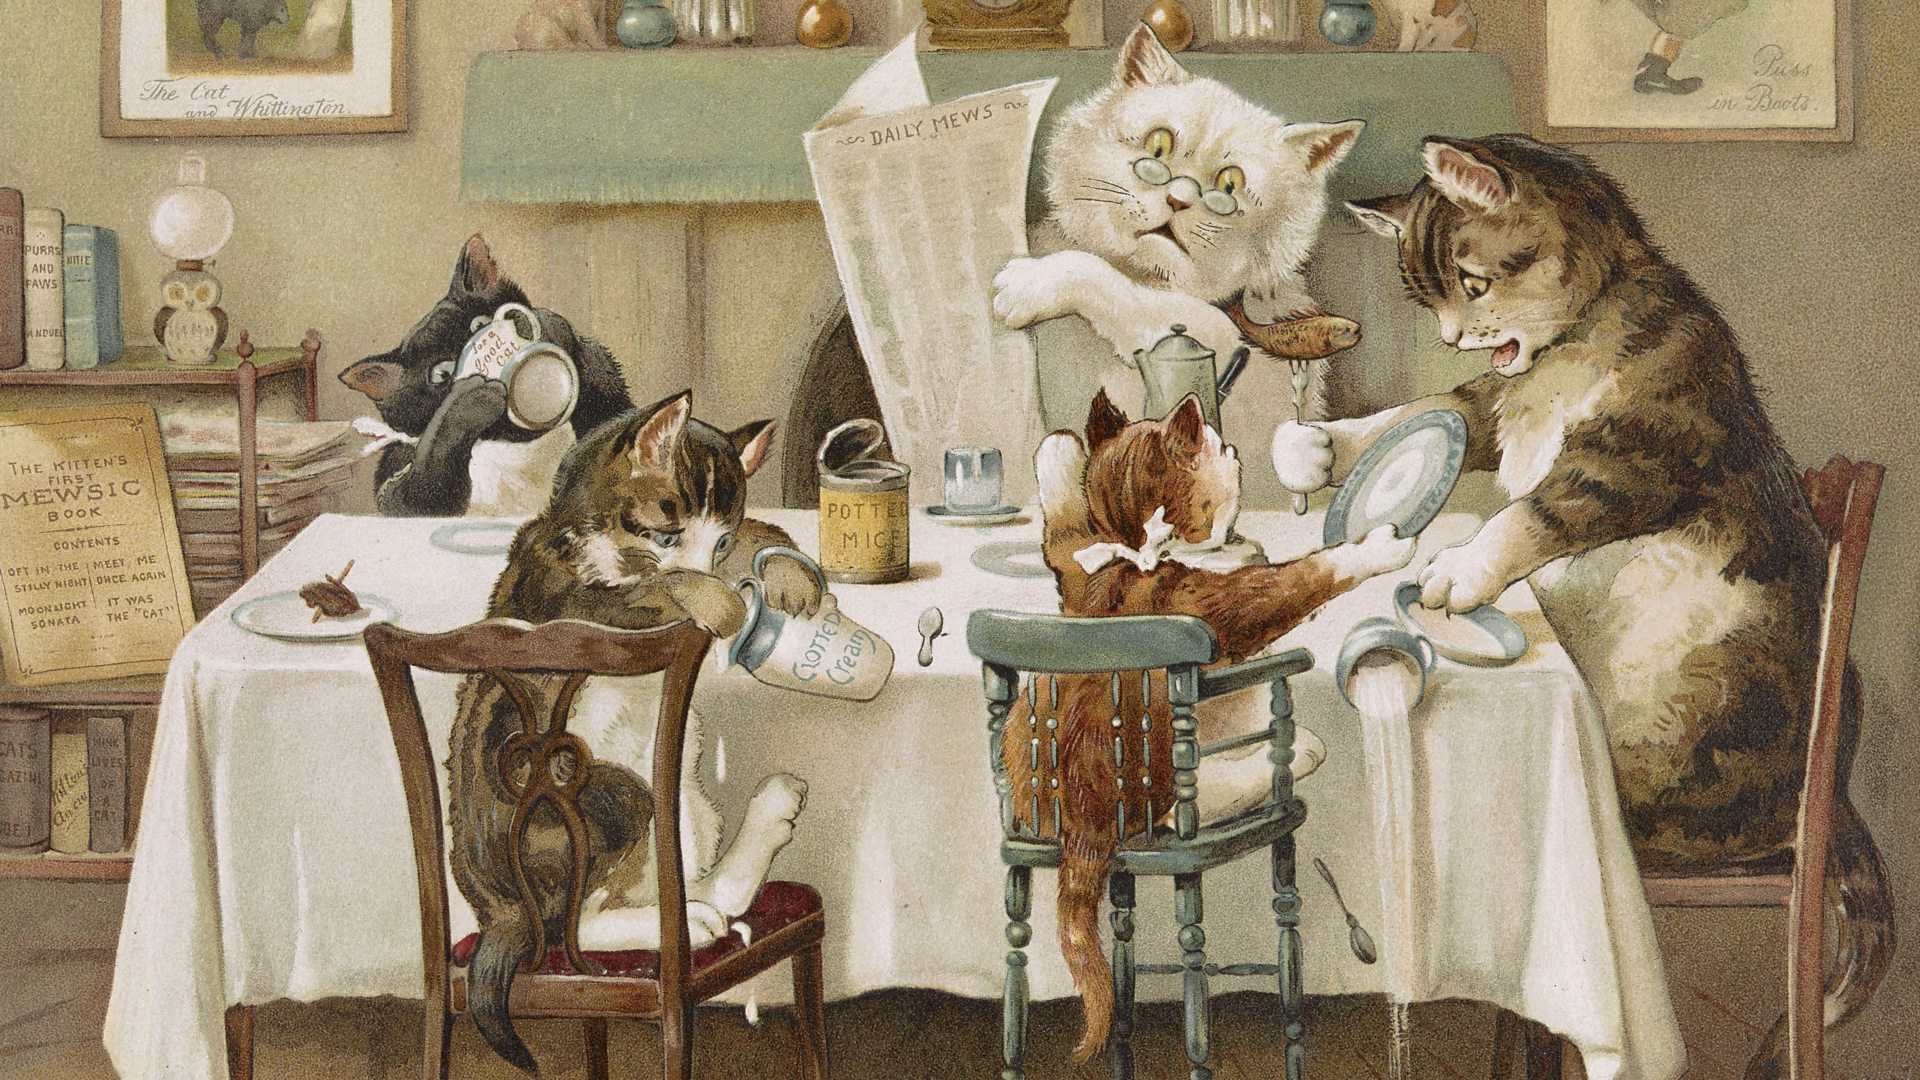 Louis Wain Cat Tales-Cat Reading Book Art Print